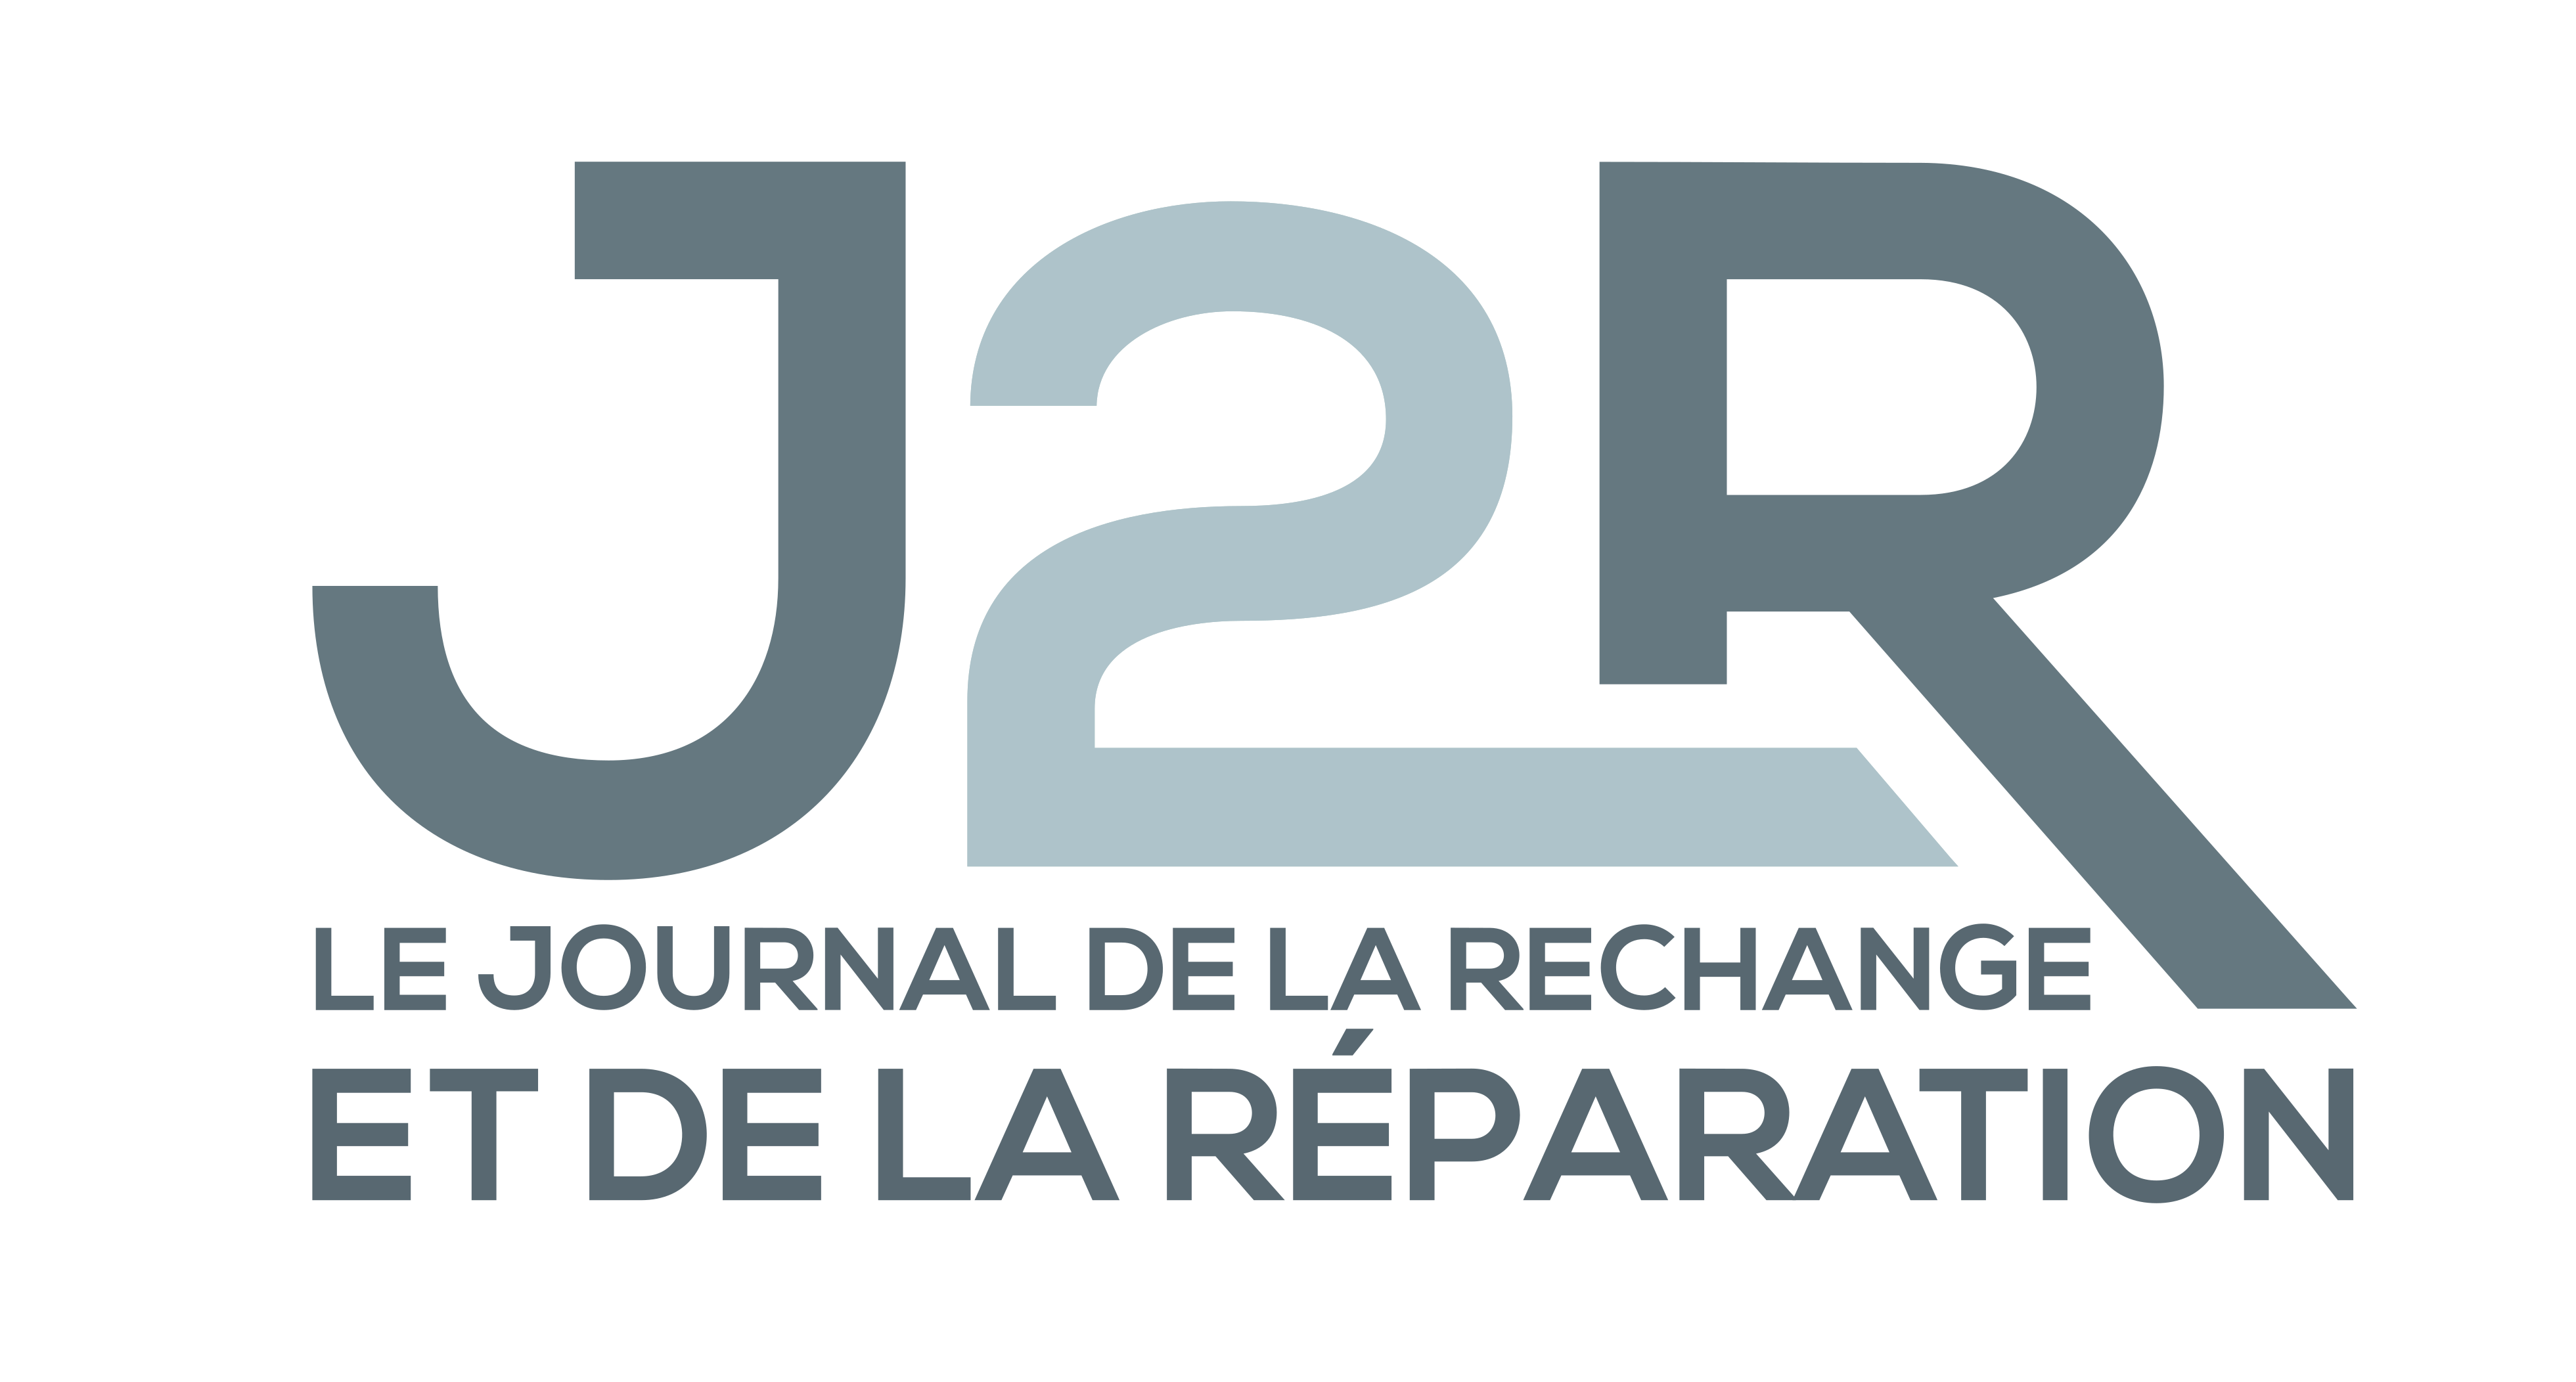 Les Émissions du Journal de la Rechange et de la Réparation